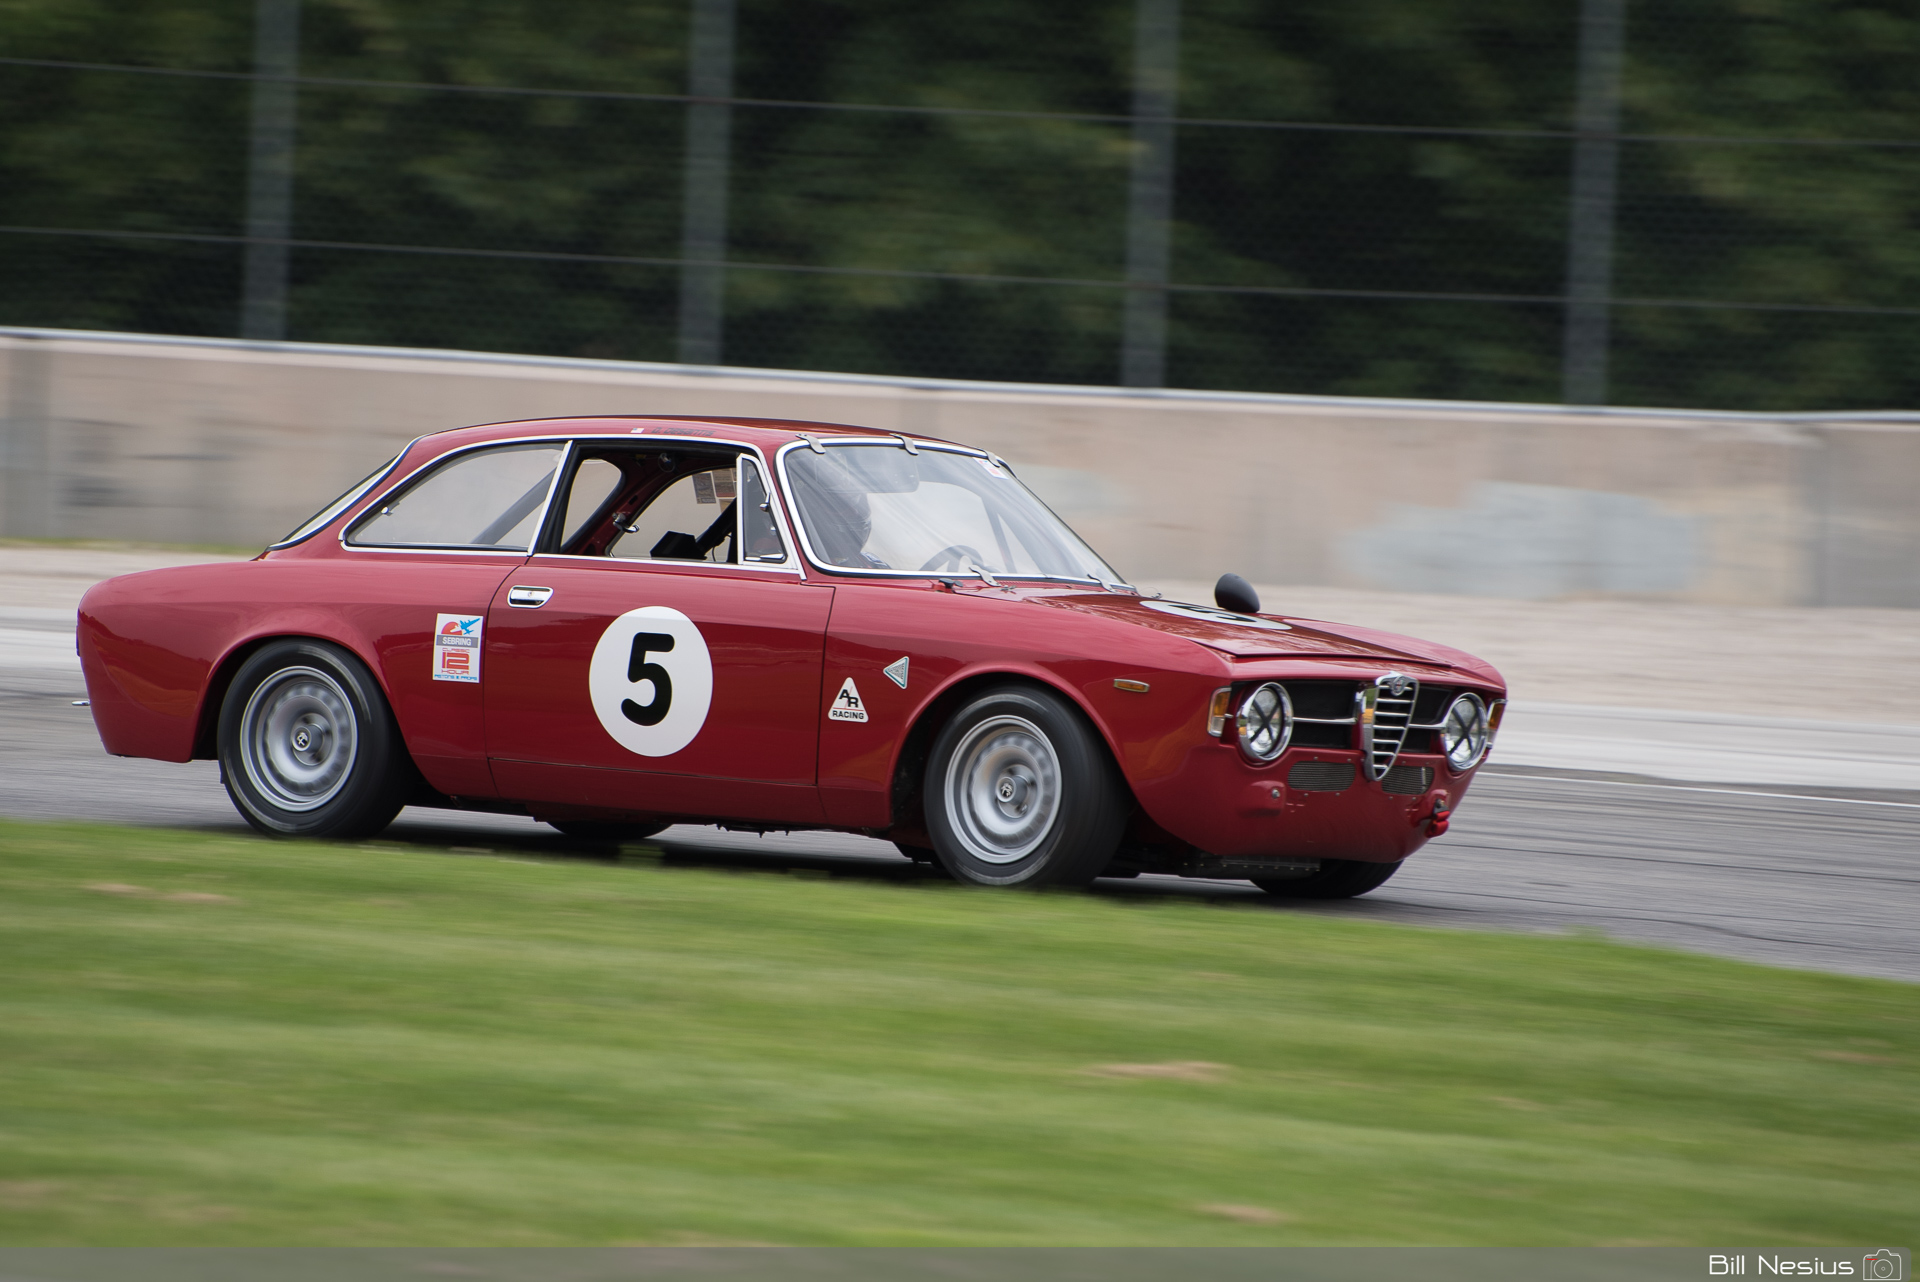 1967 Alfa Romeo GT jr #5 in turn 1 / DSC_4873 / 4